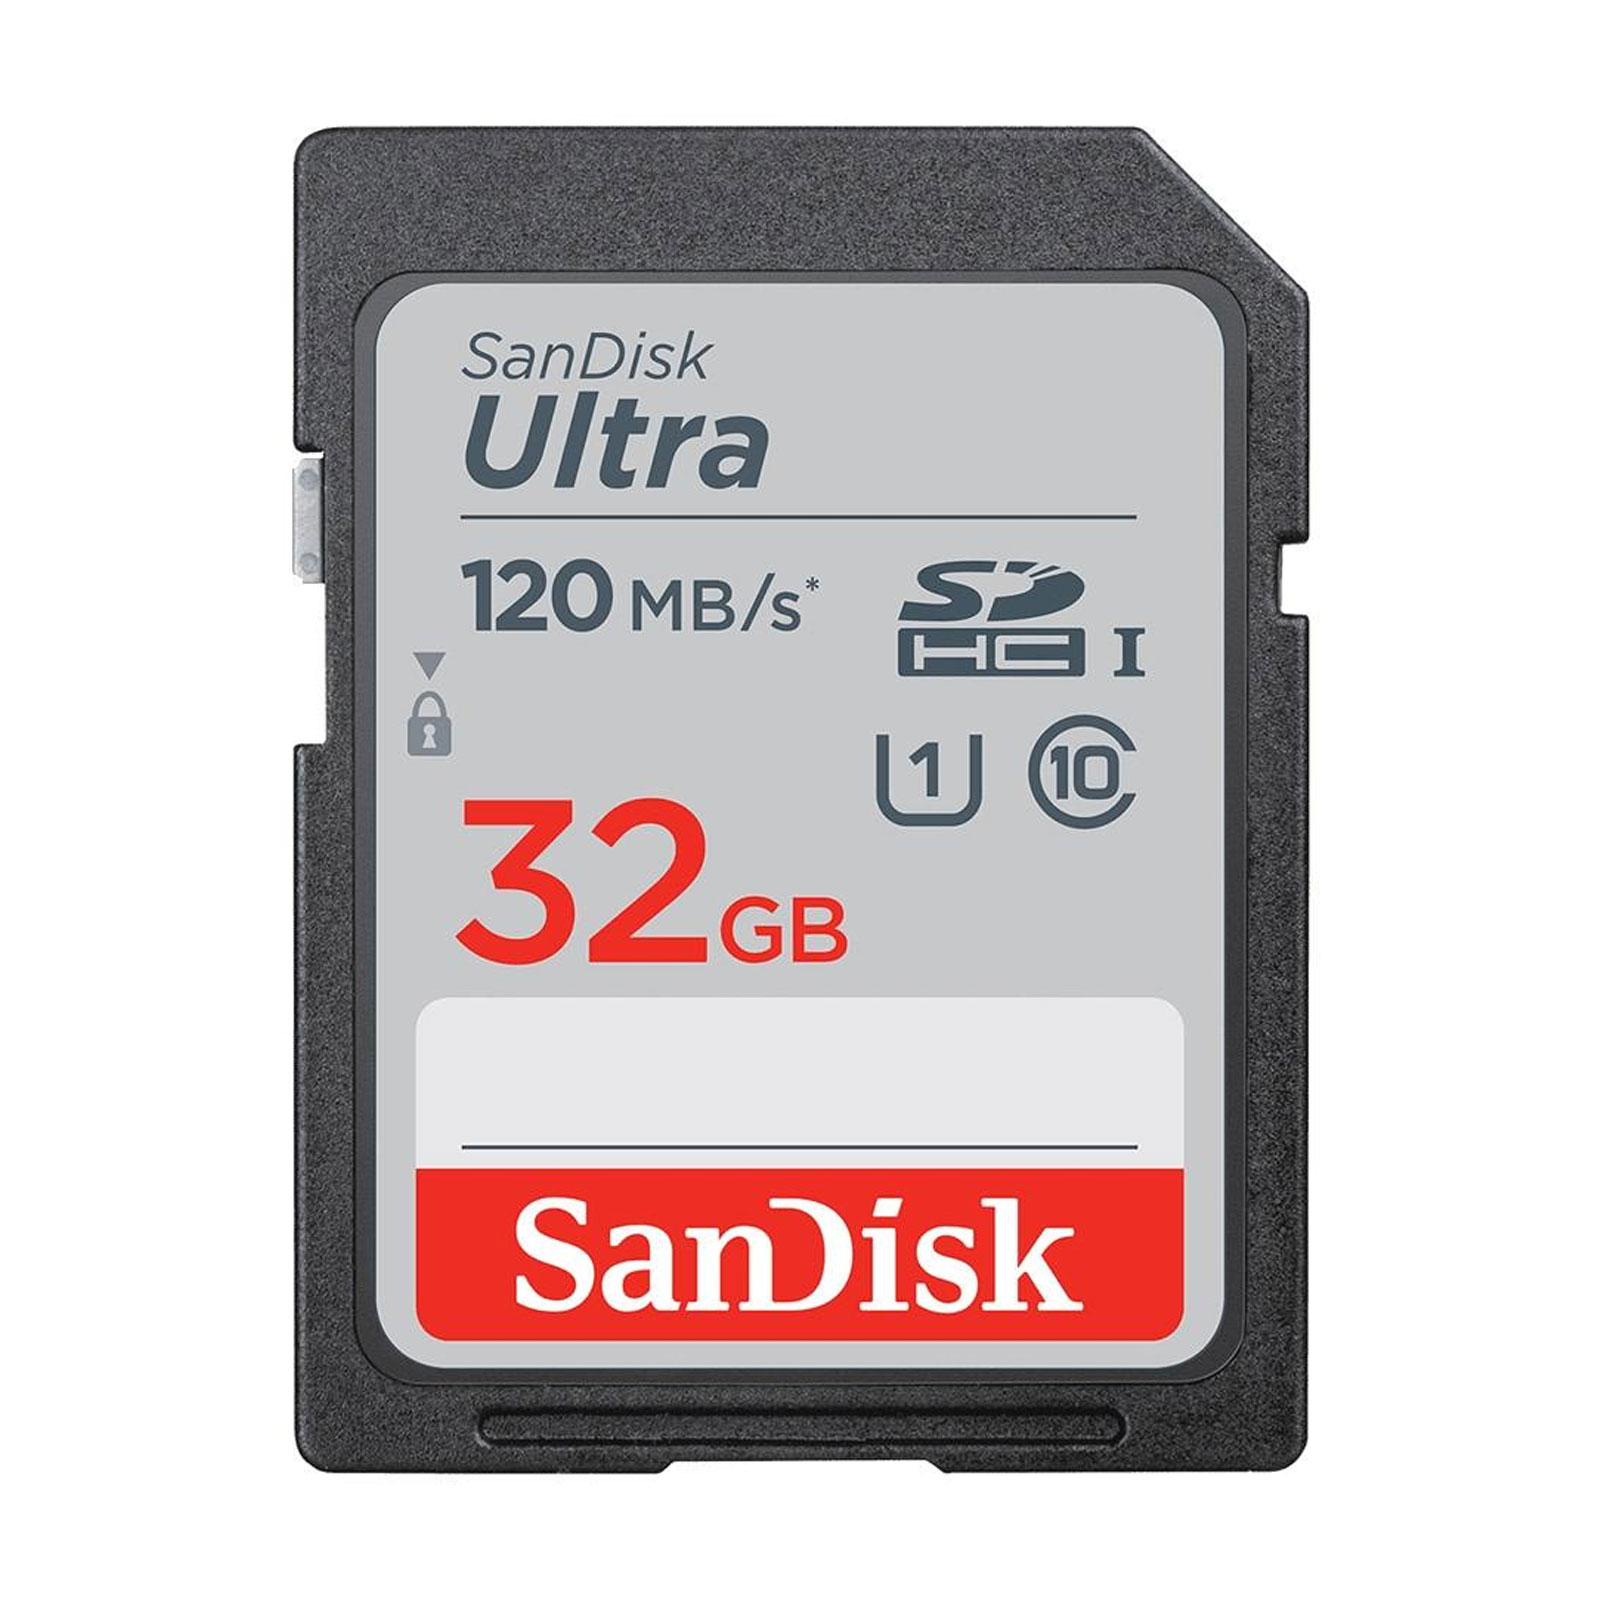 SanDisk SDHC Ultra 32GB Speicherkarte